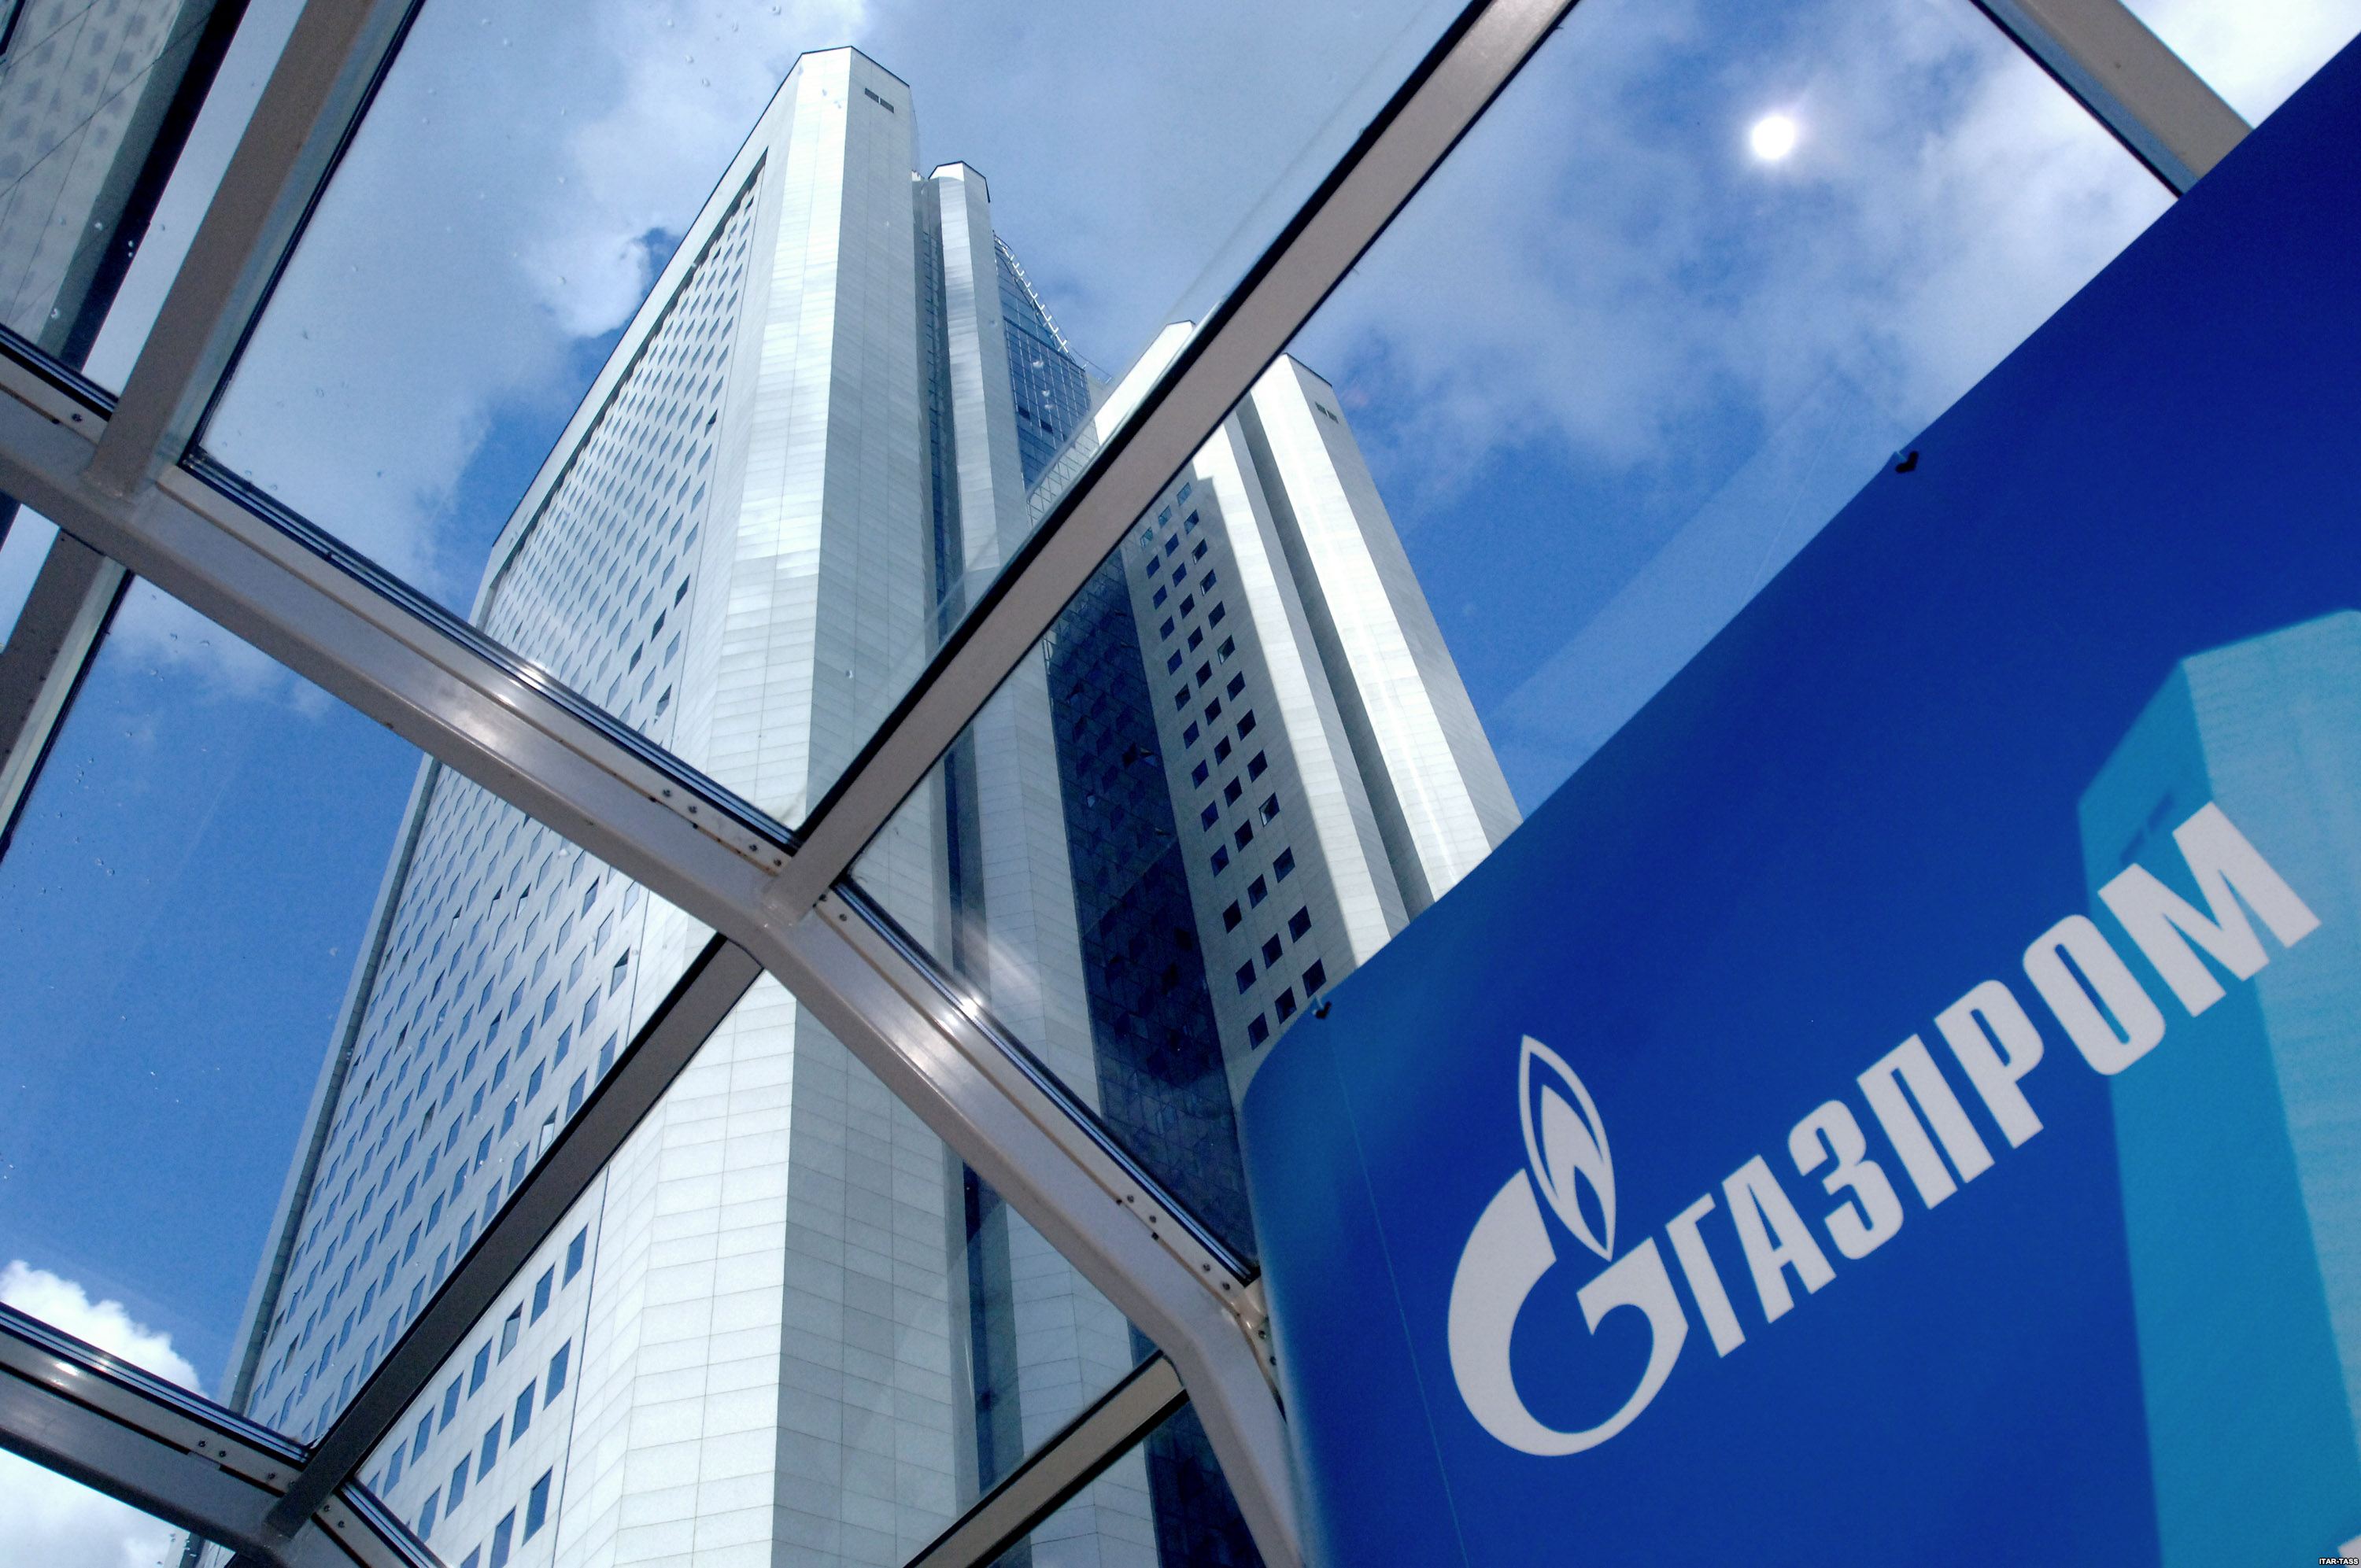 Нафтогаз: судебное разбирательство с Газпромом вполне возможно